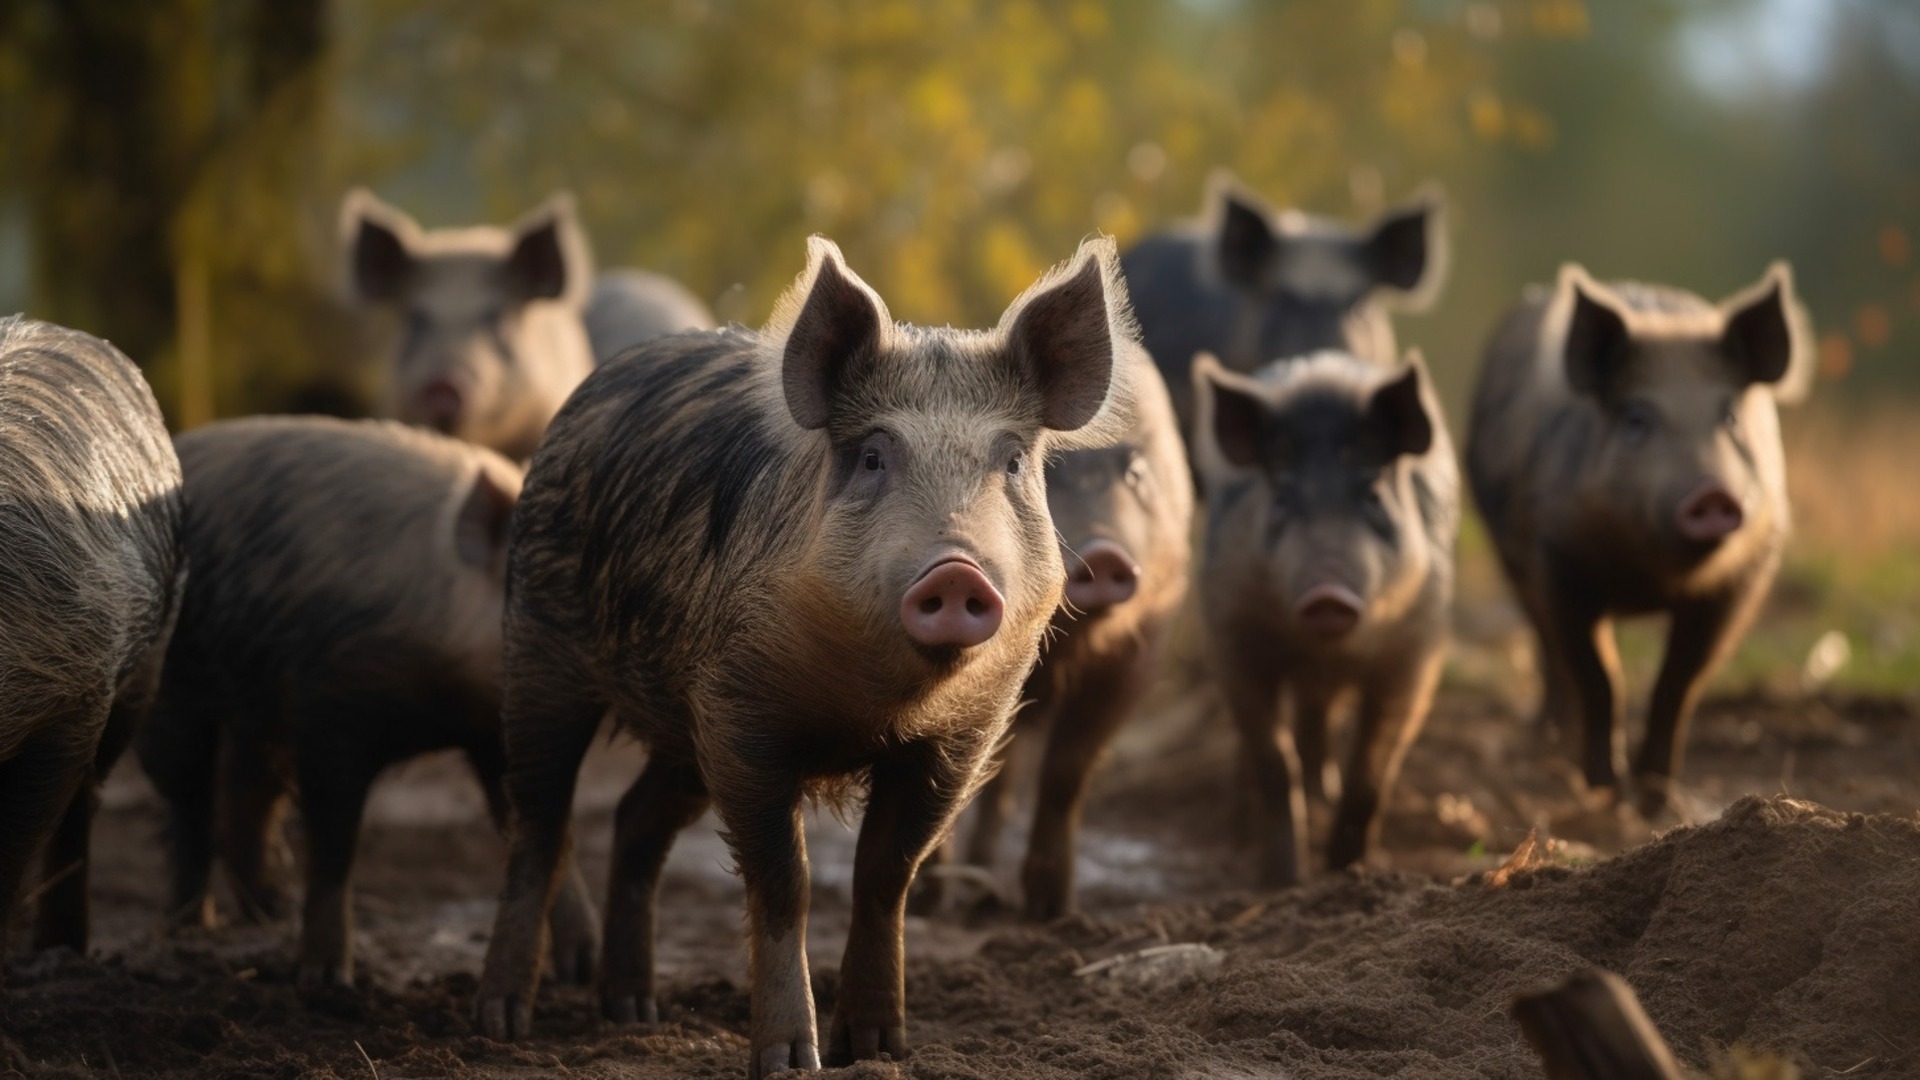 В Усть-Донецком районе Ростовской области выявлен очаг африканской чумы свиней